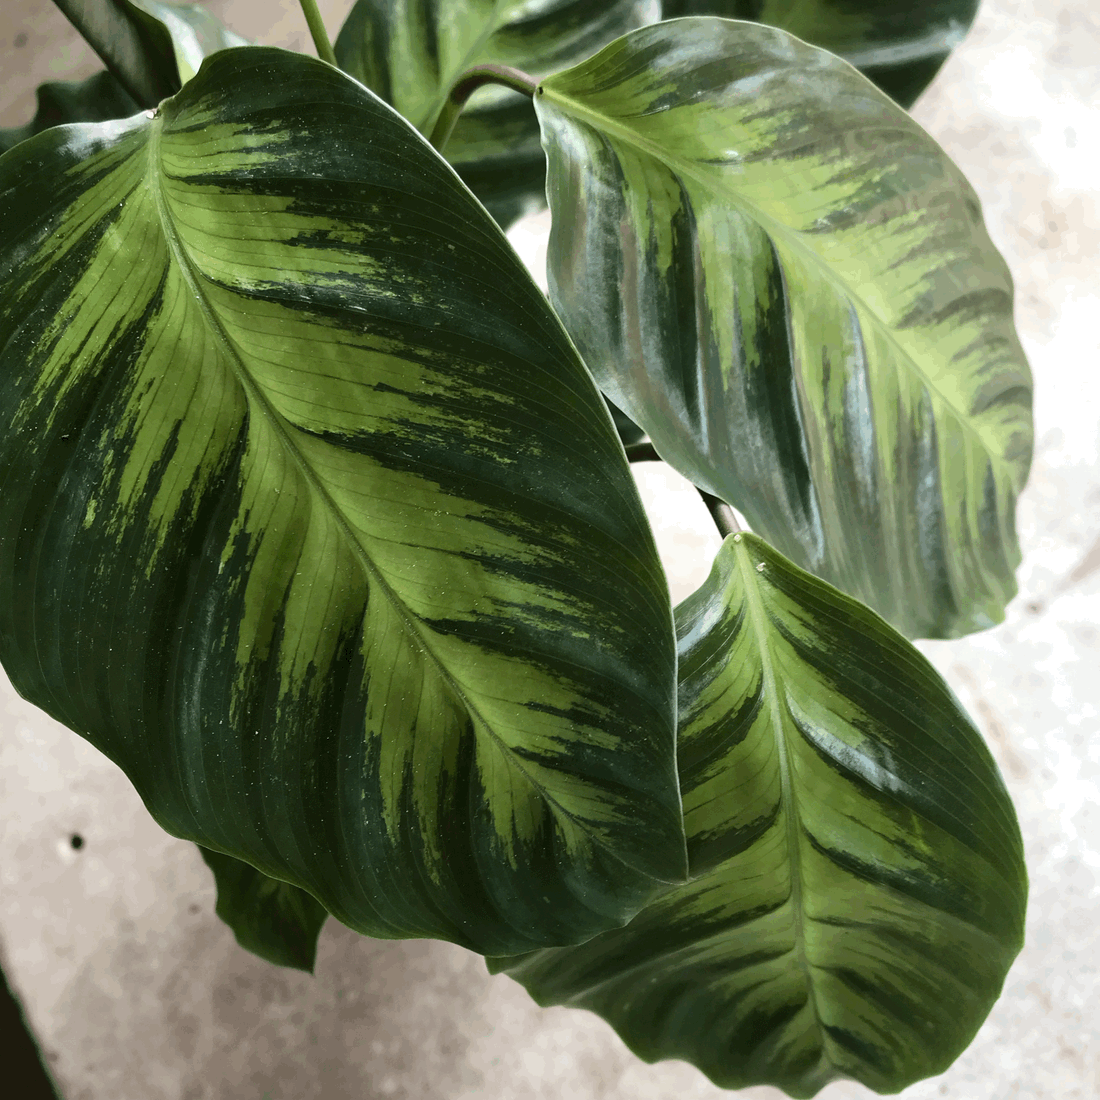 Goeppertia albertii syn. Calathea albertii (Emerald Feather)